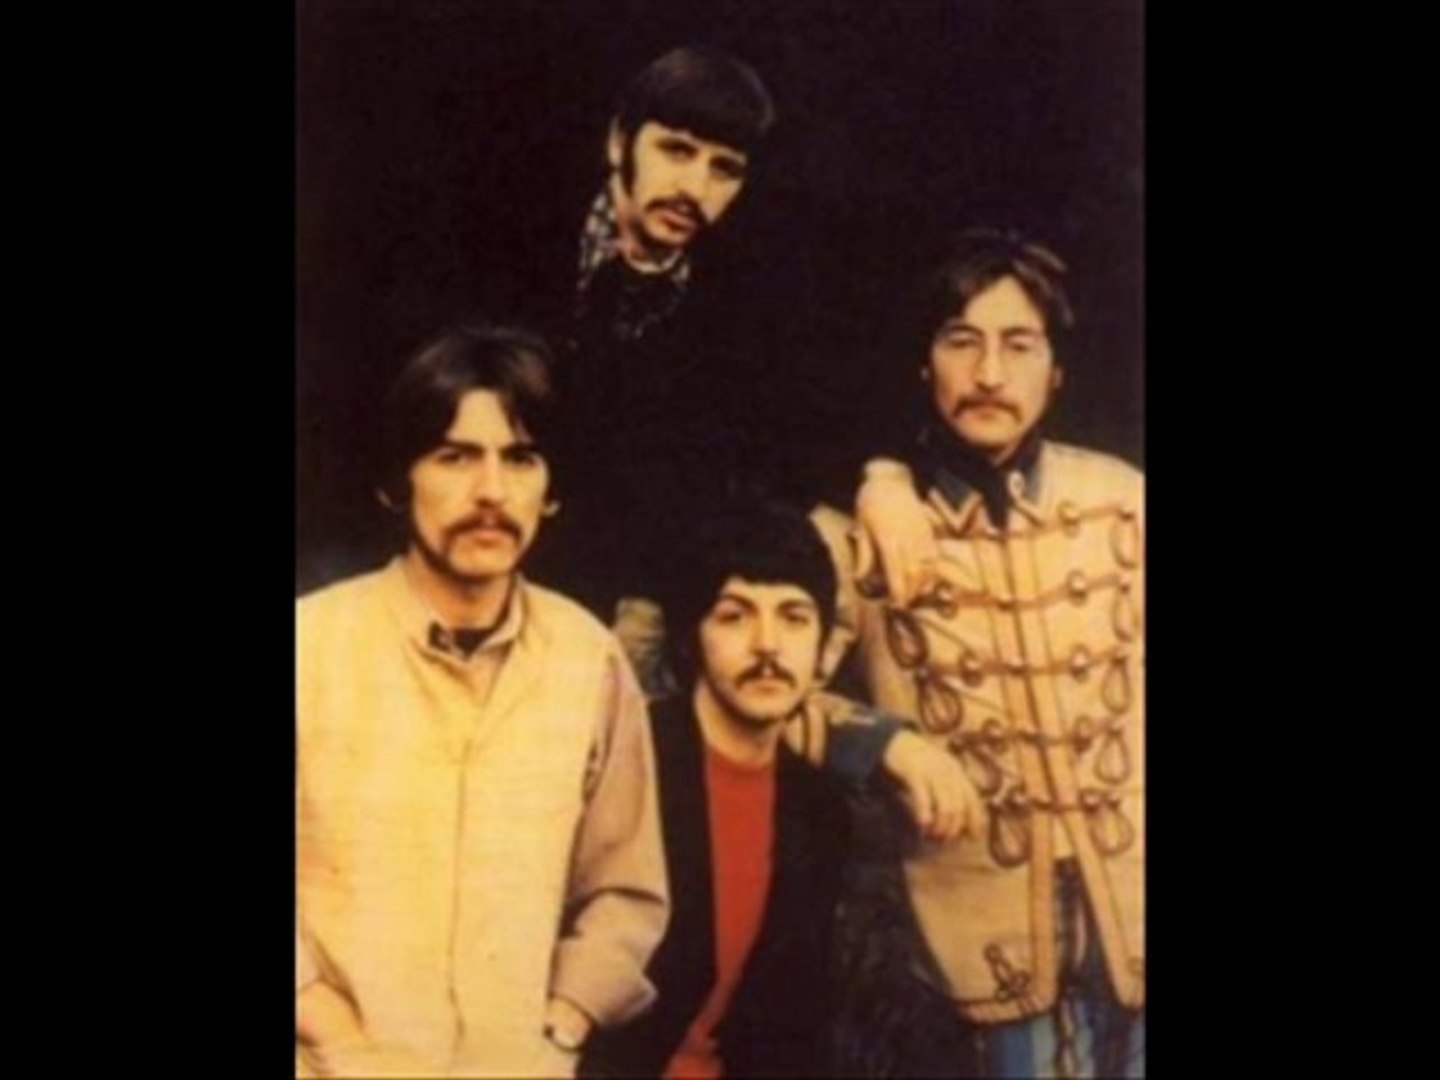 GEH' RAUS - The Beatles